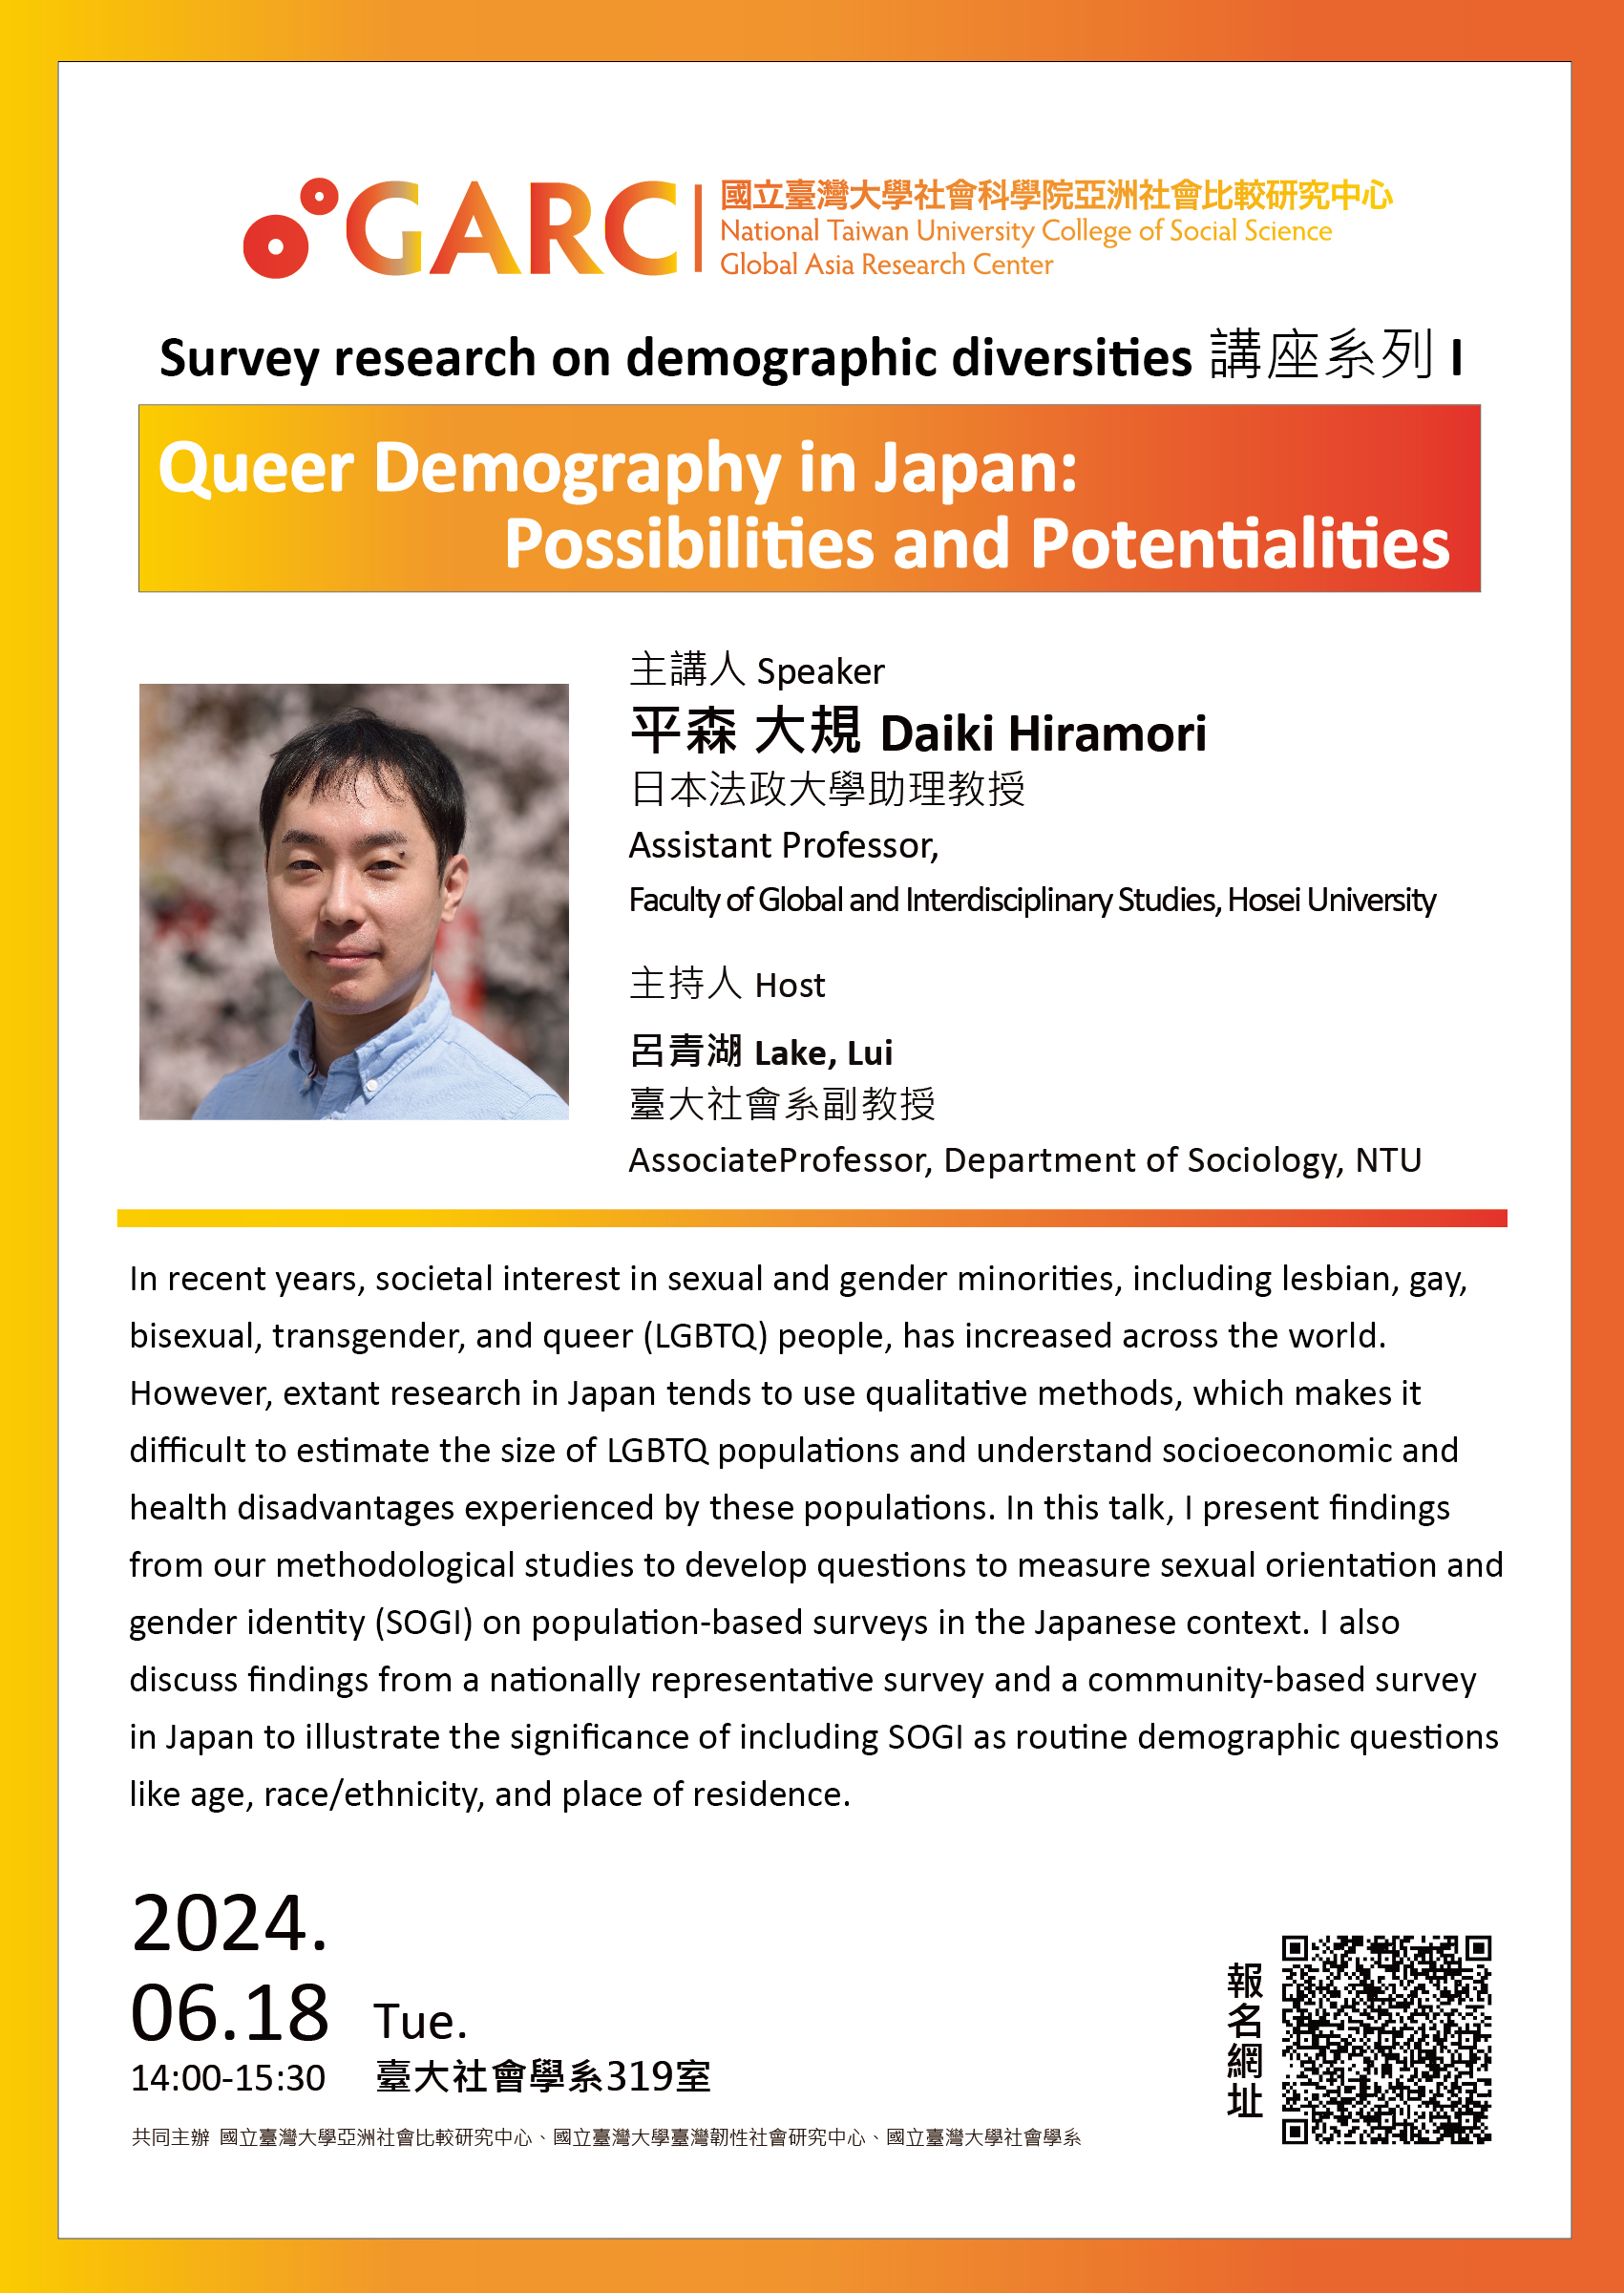 【活動資訊】2024.06.18Survey research on demographic diversities 講座系列 I Queer Demography in Japan: Possibilities and Potentialities